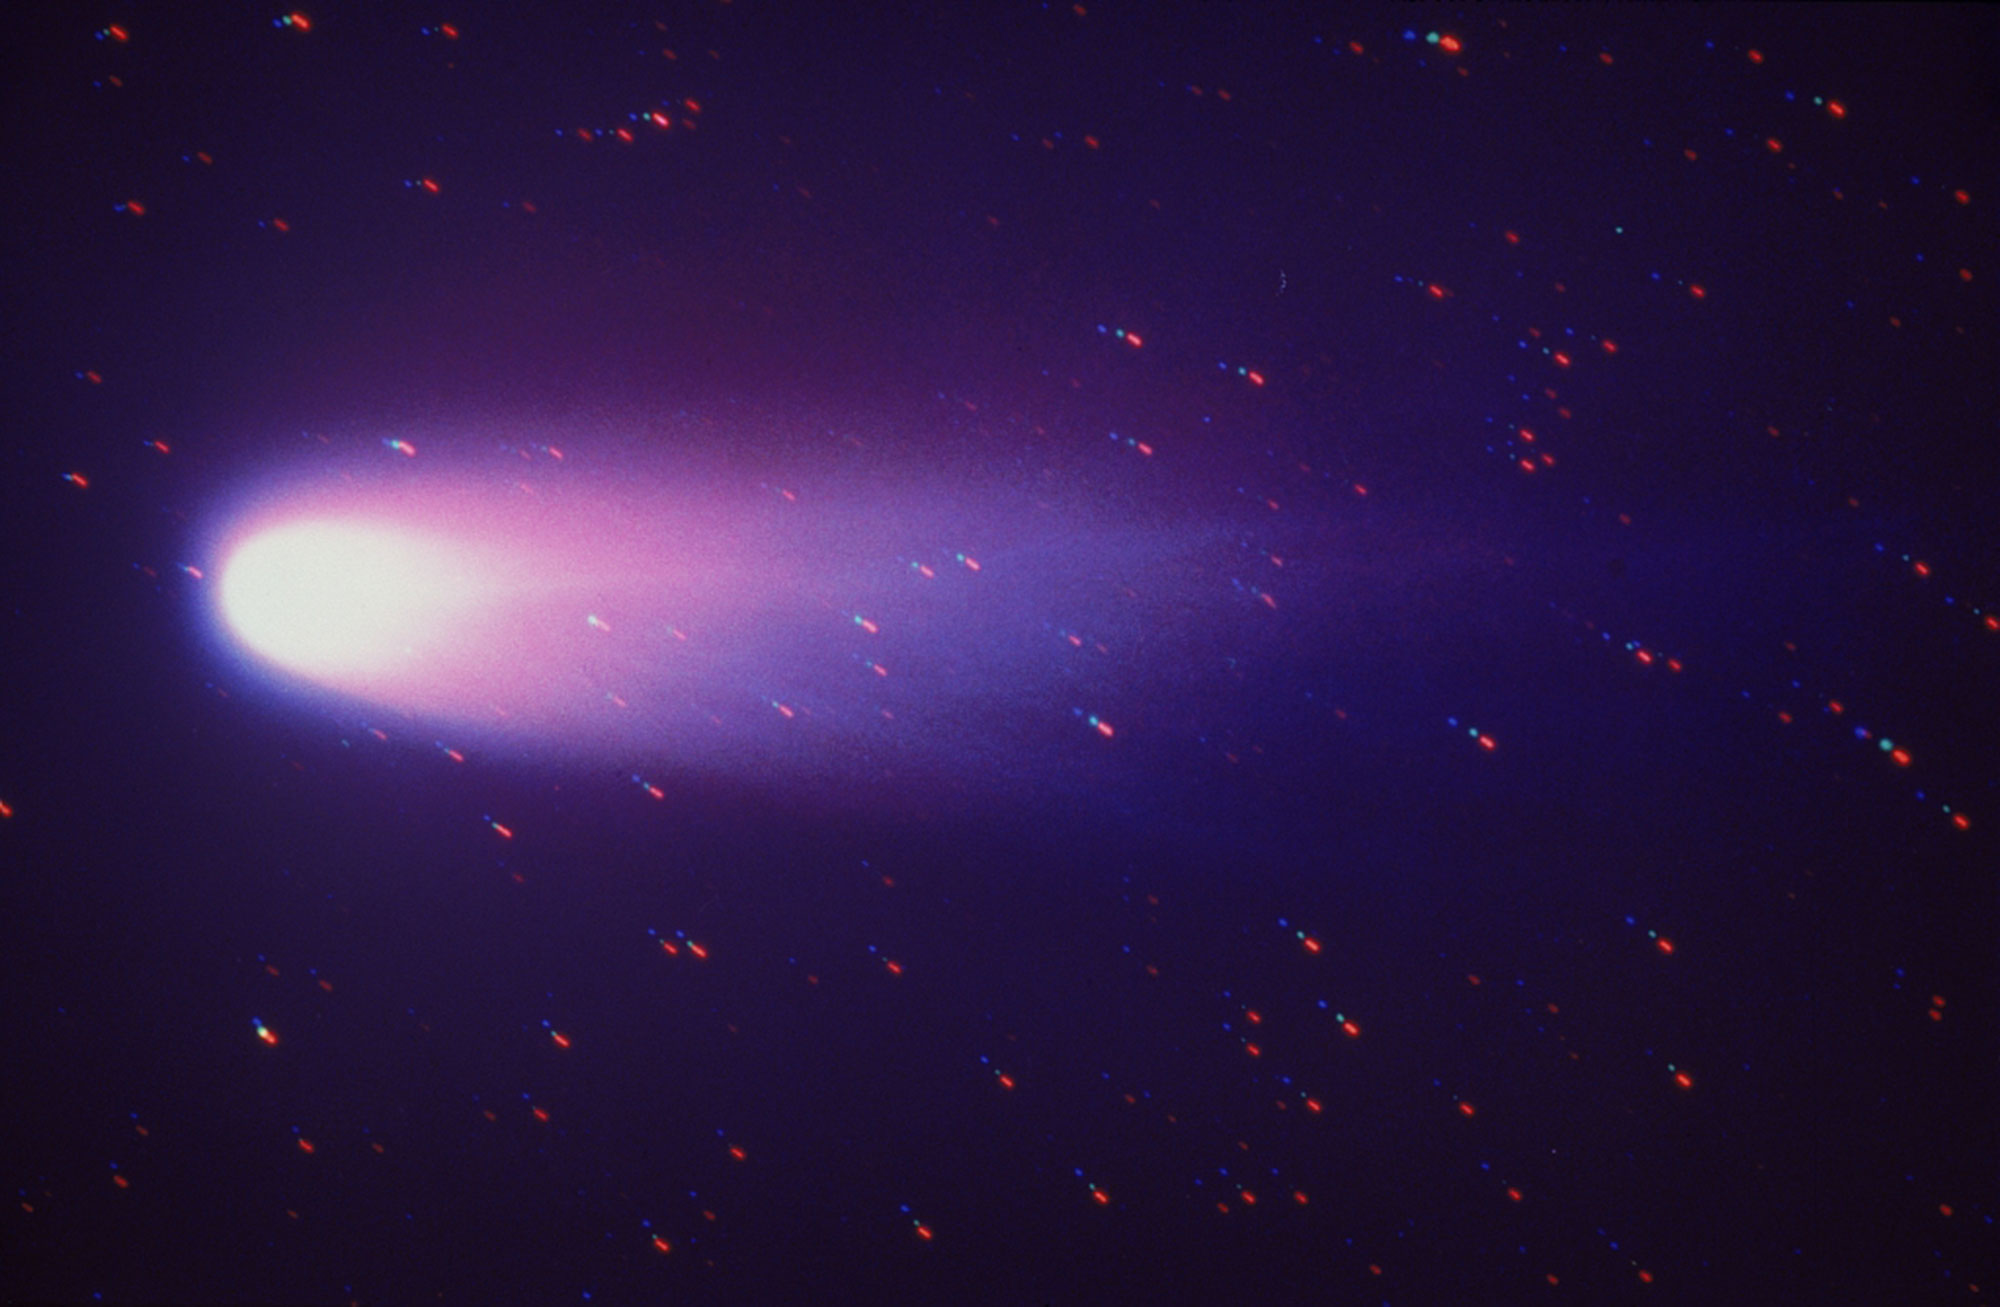 Kometengeschichten: Österreichs Comet Physics Laboratory (CoPhyLab) unterstützt die Weltraumforschung